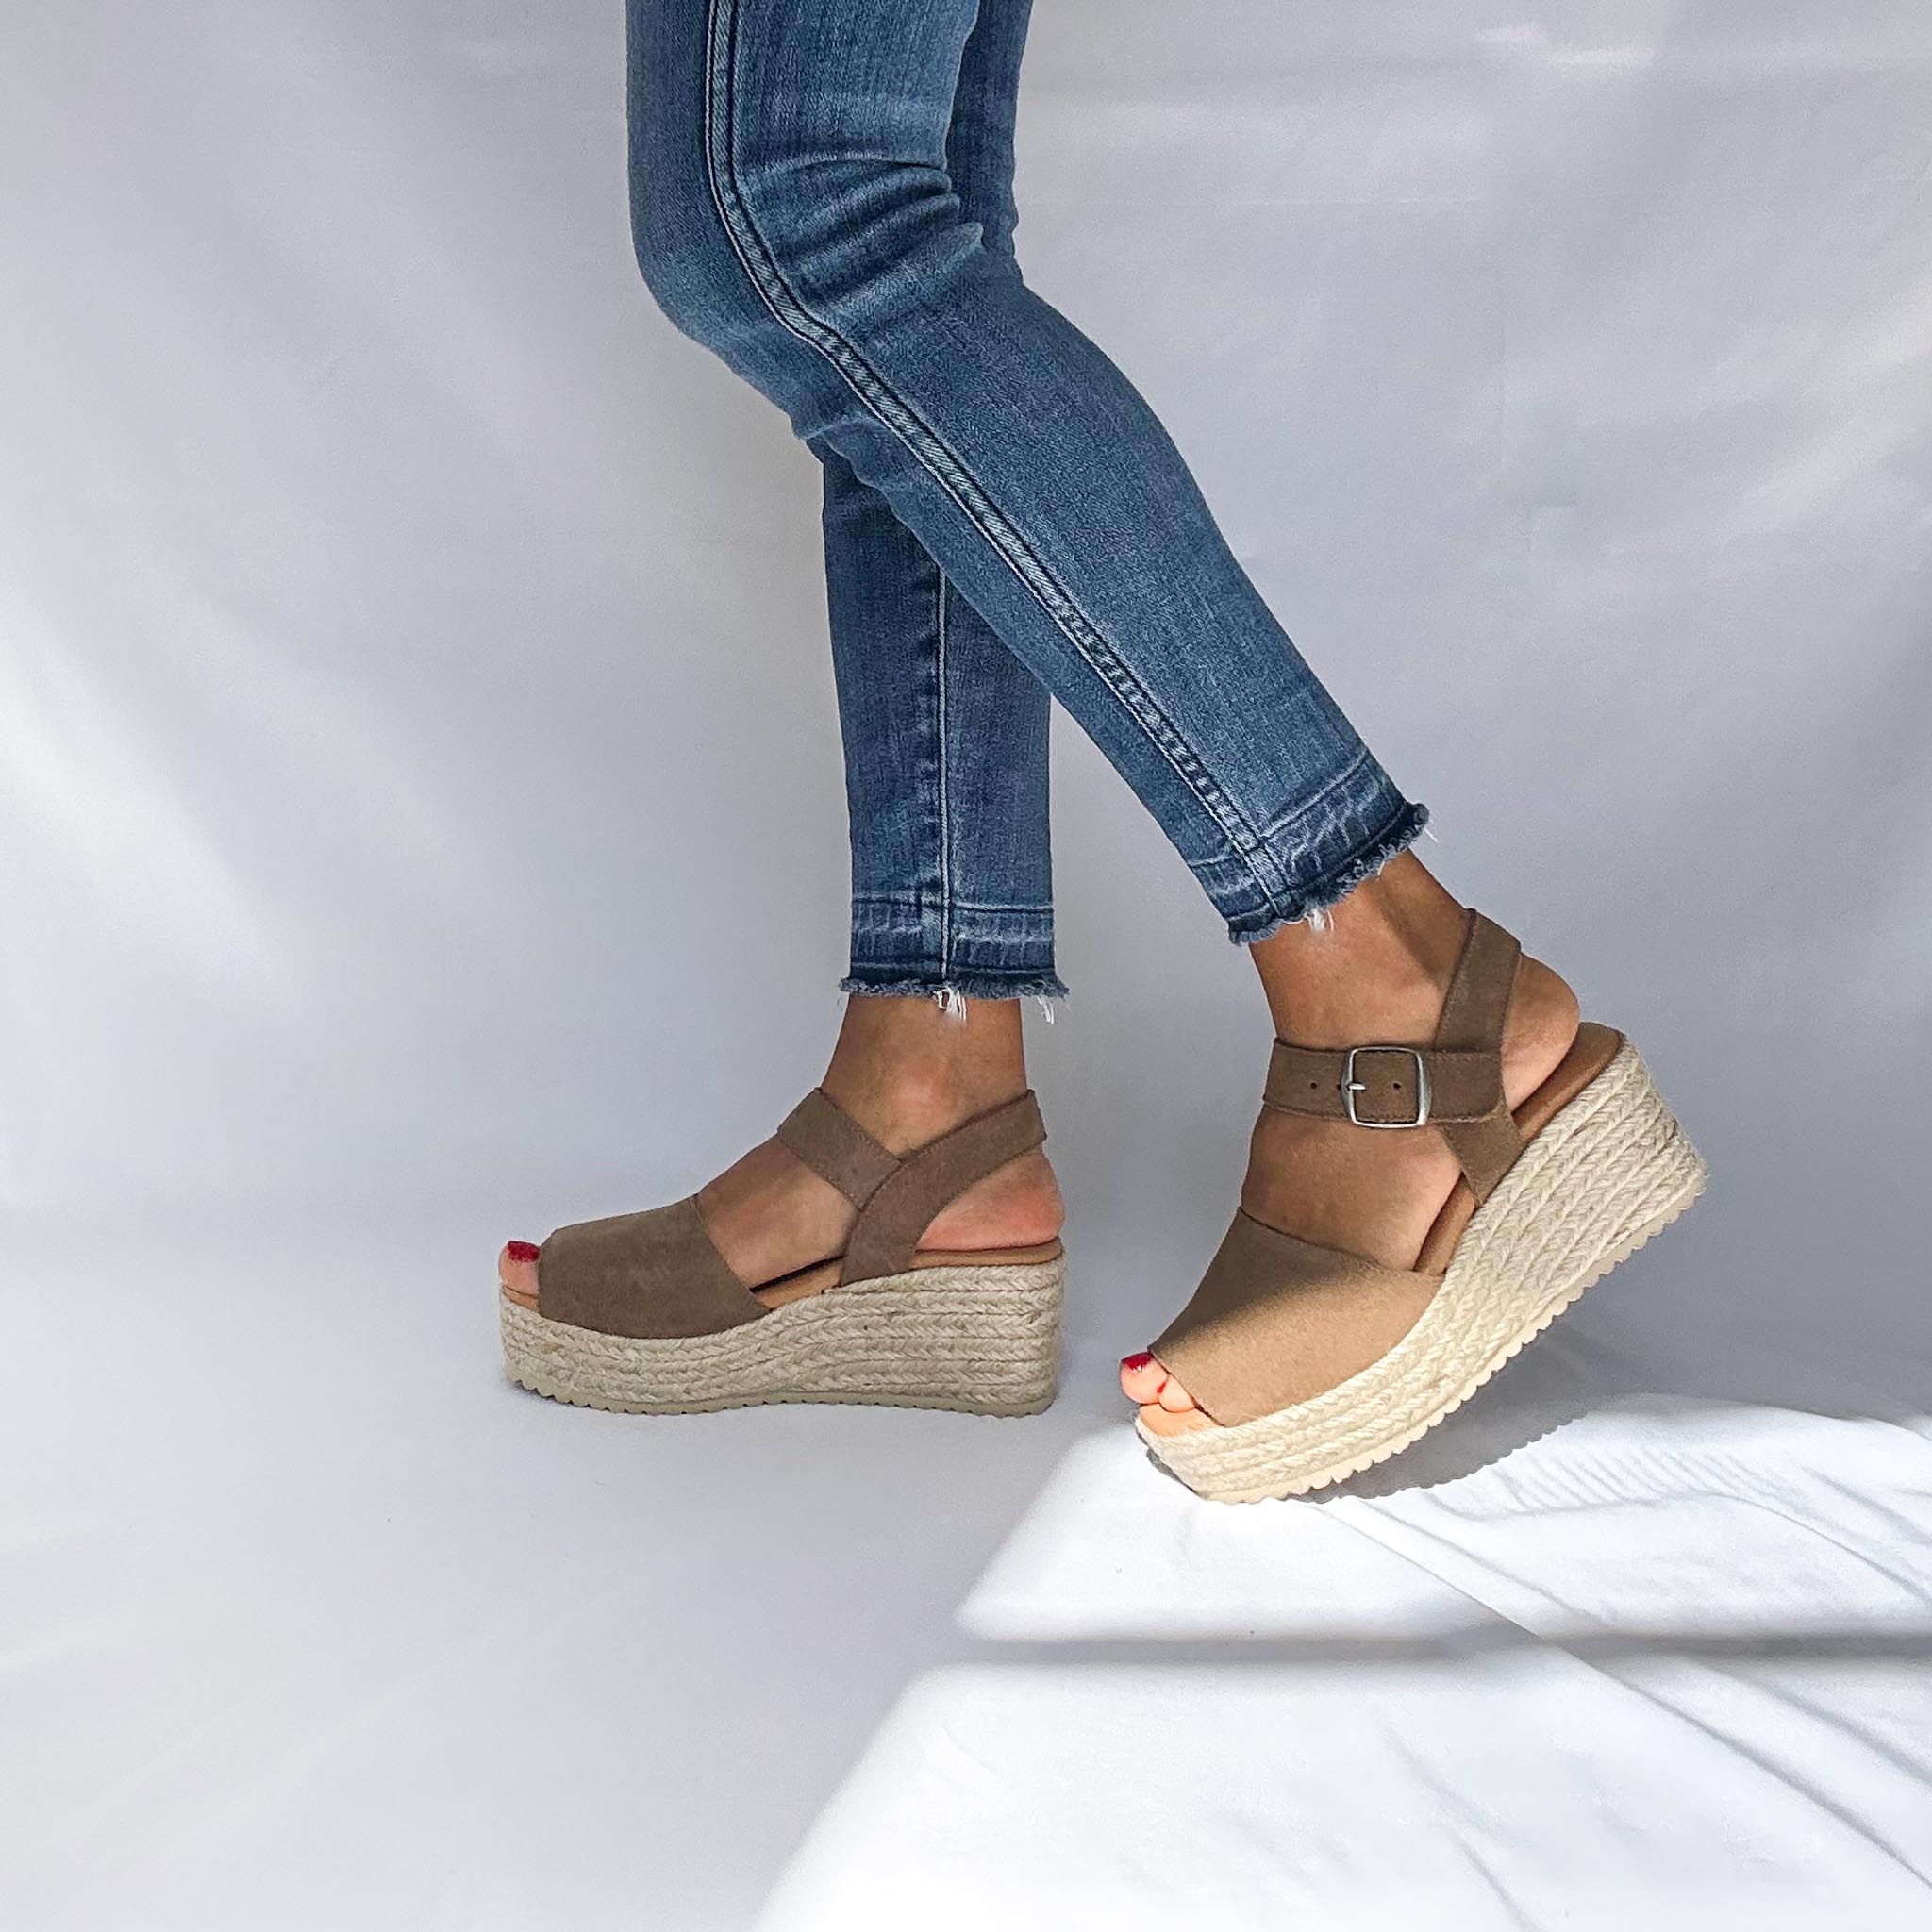 Minkbrown platform sandals with strap